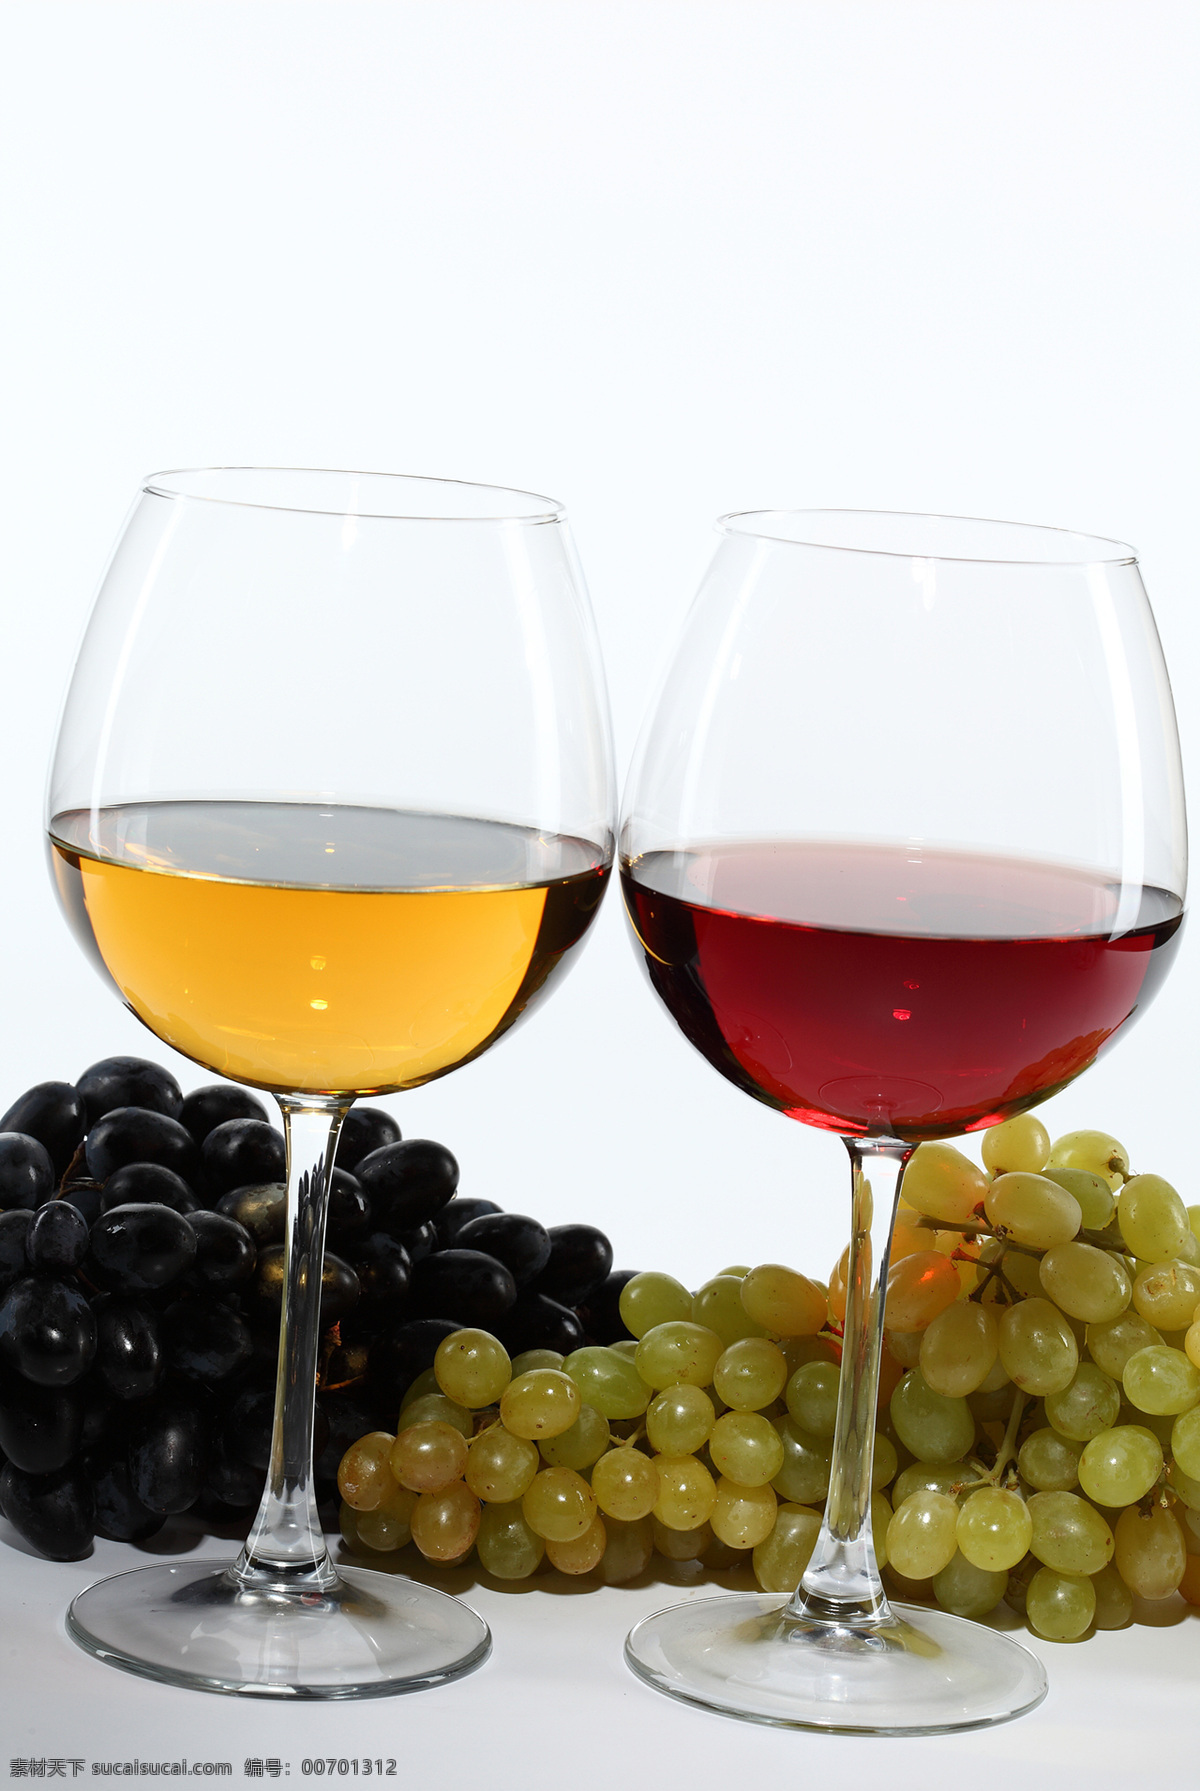 两 杯 葡萄酒 葡萄 红酒 酒杯 酒 啤酒 玻璃杯子 果蔬 休闲饮品 健康食品 酒水饮料 餐饮美食 白色